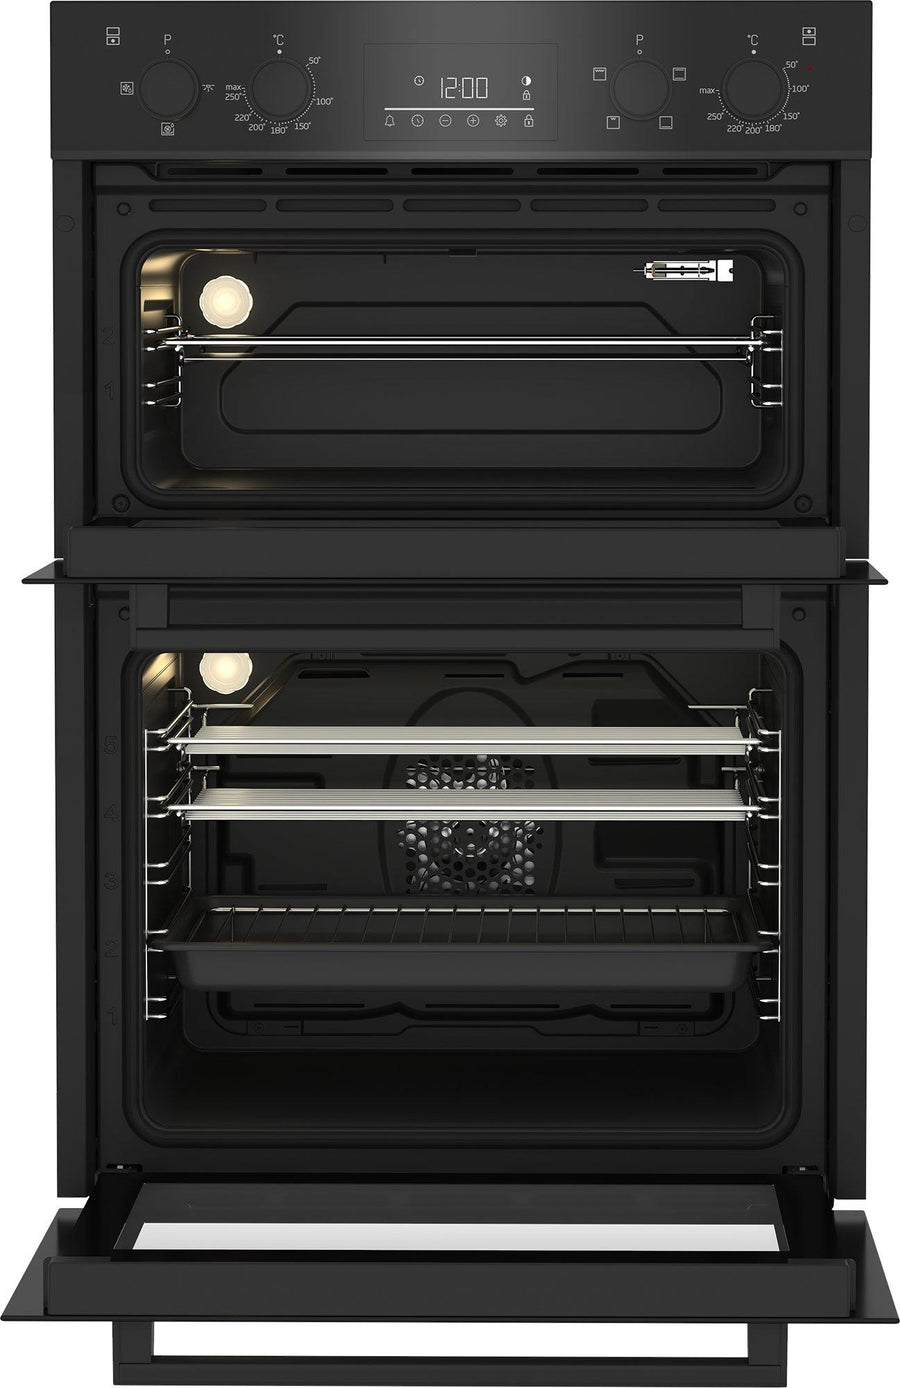 BBDF22300 beko built in double oven black